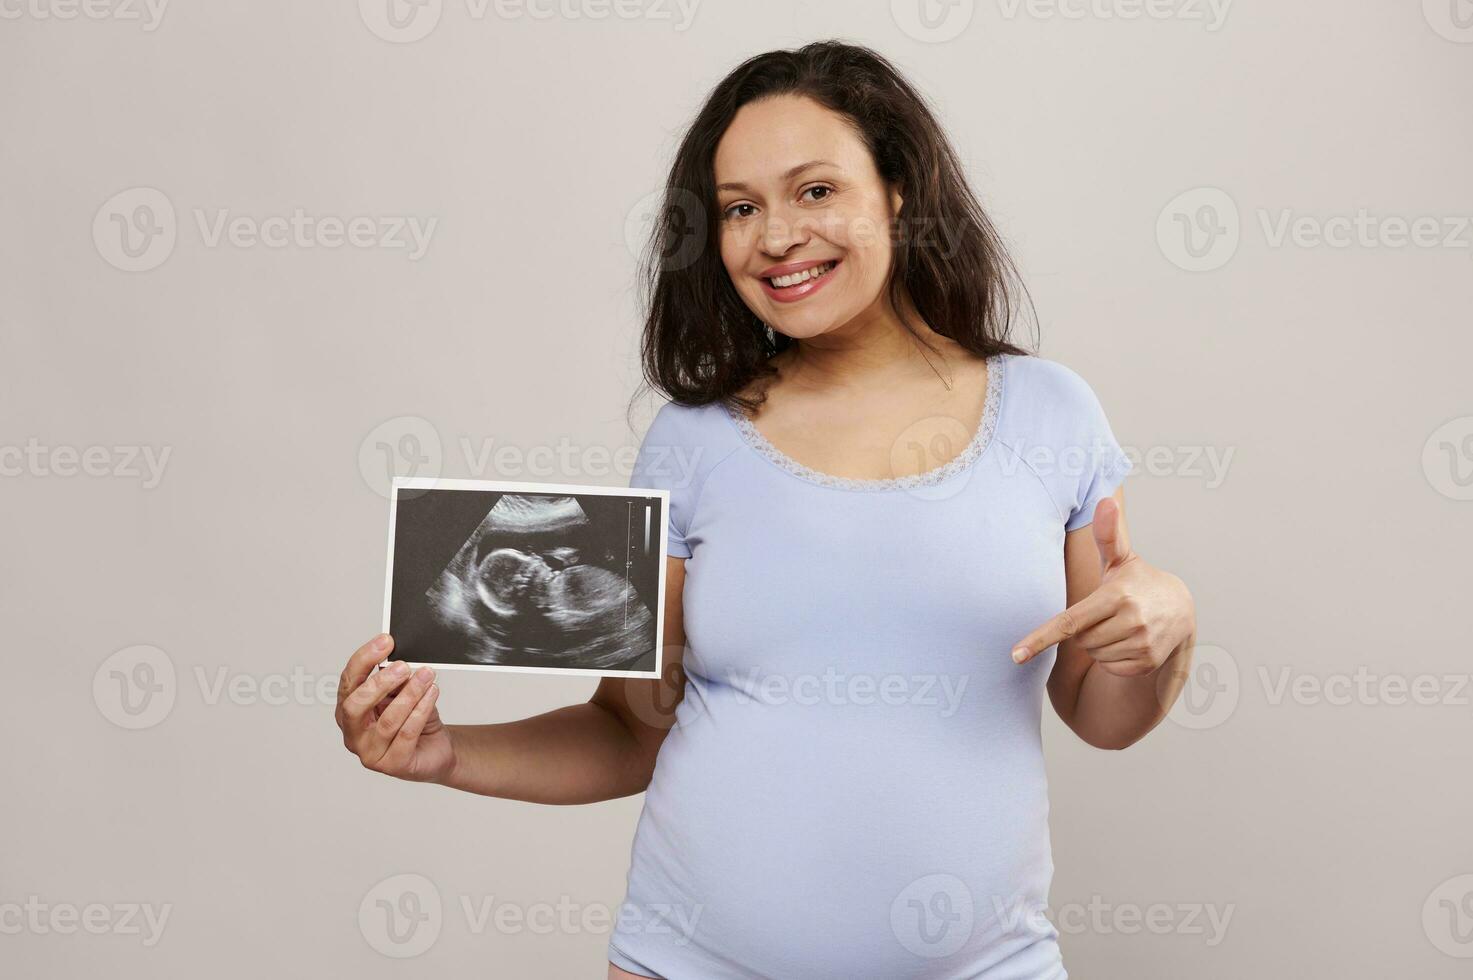 glücklich schwanger erwartungsvoll Mutter halten Scan von ihr Kind im Mutterleib, lächelnd beim Kamera und zeigen Finger beim ihr Abdomen foto